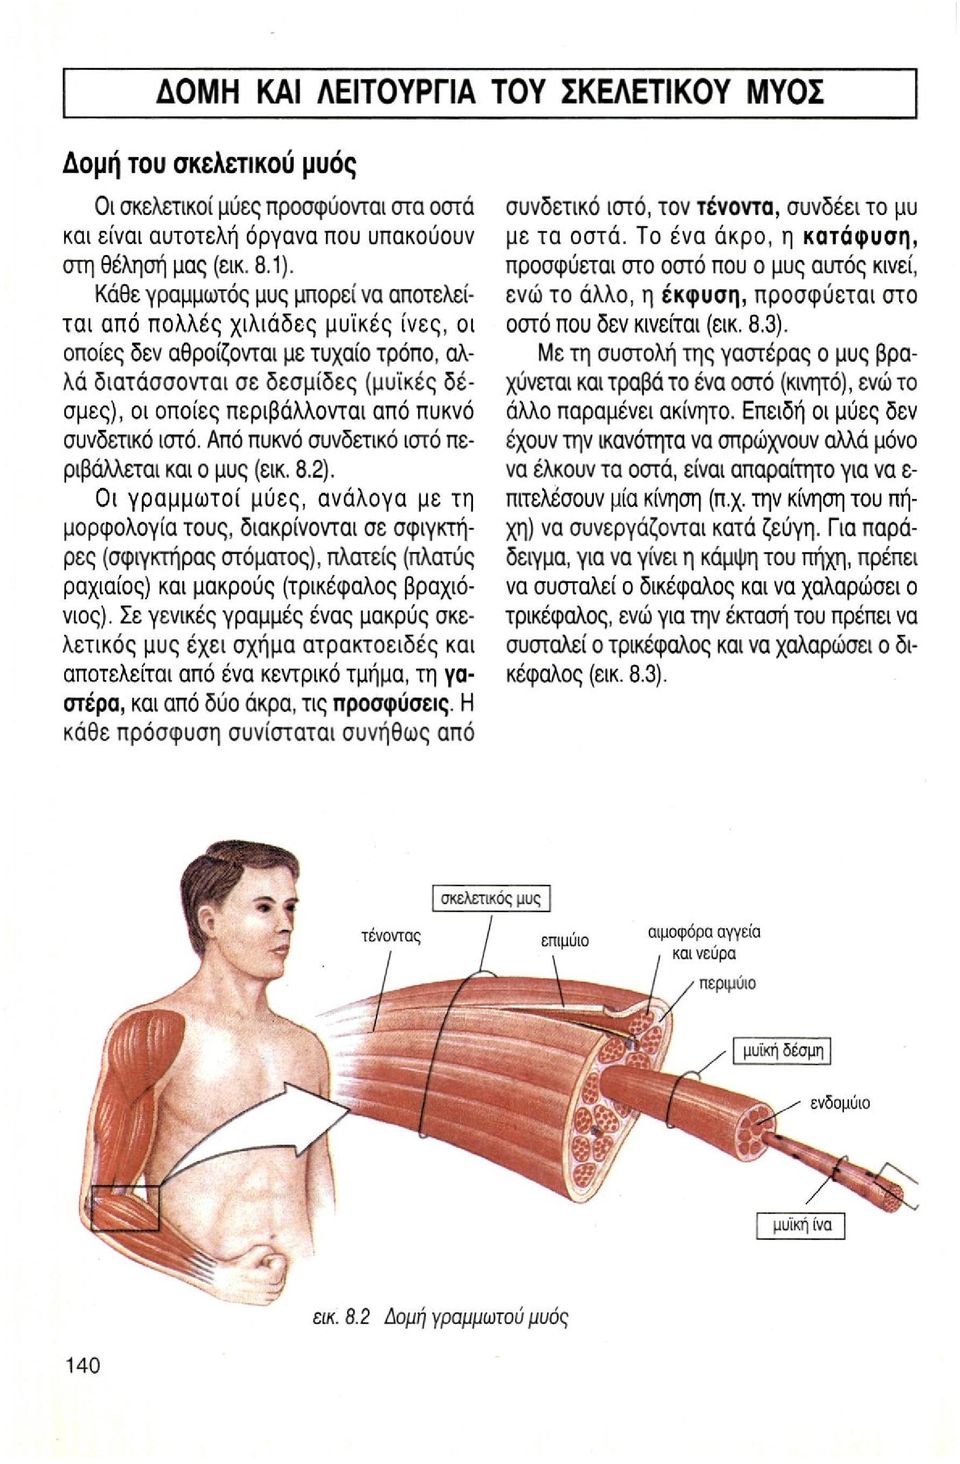 συνδετικό ιστό. Από πυκνό συνδετικό ιστό περιβάλλεται και ο μυς (εικ. 8.2).